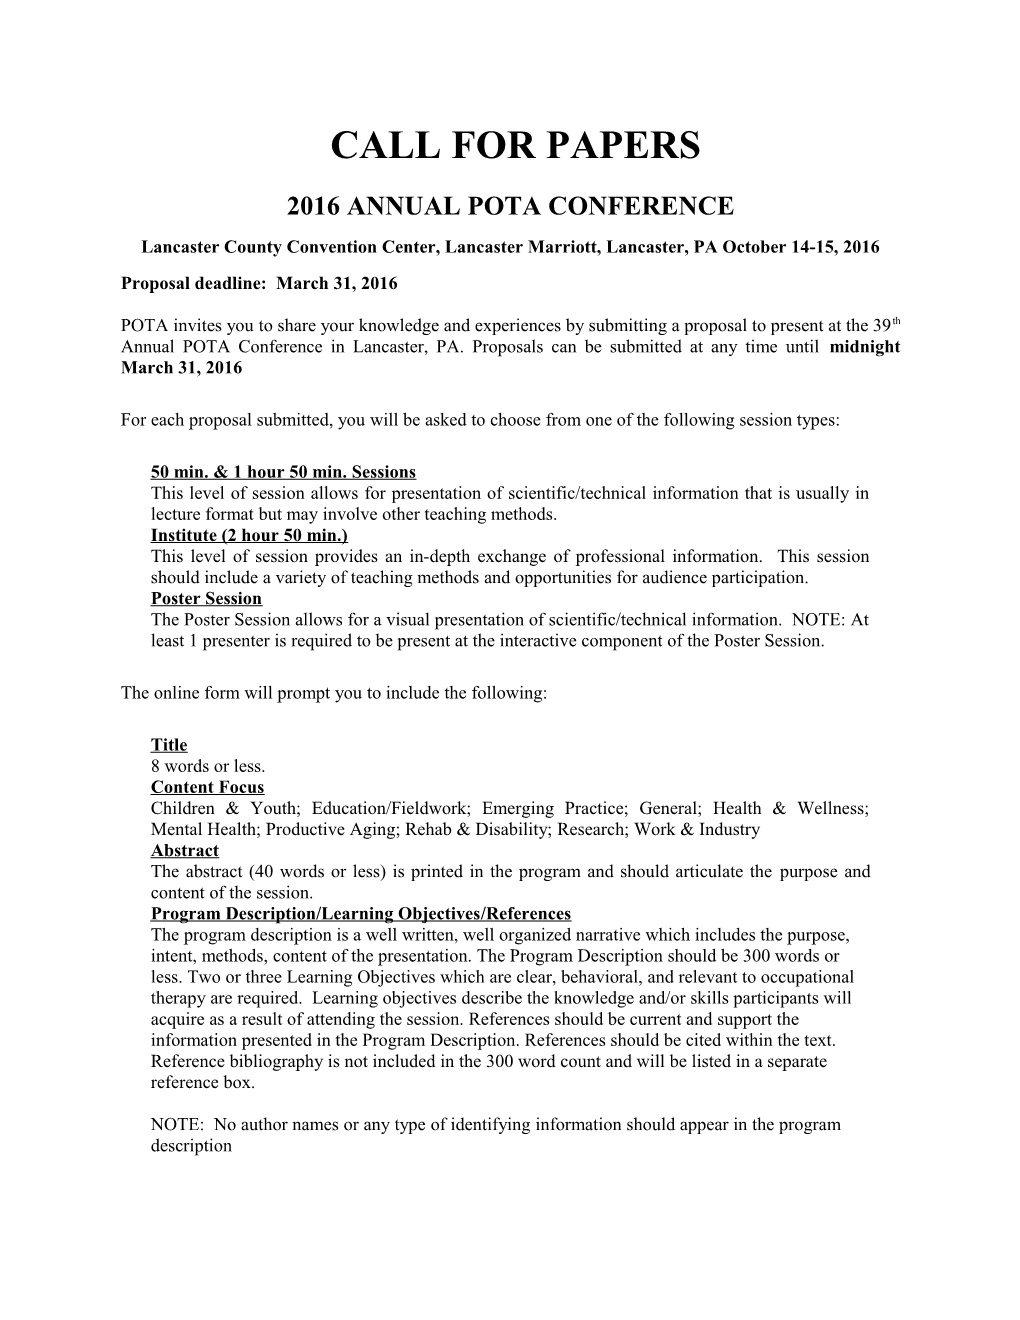 Pota Annual Conference